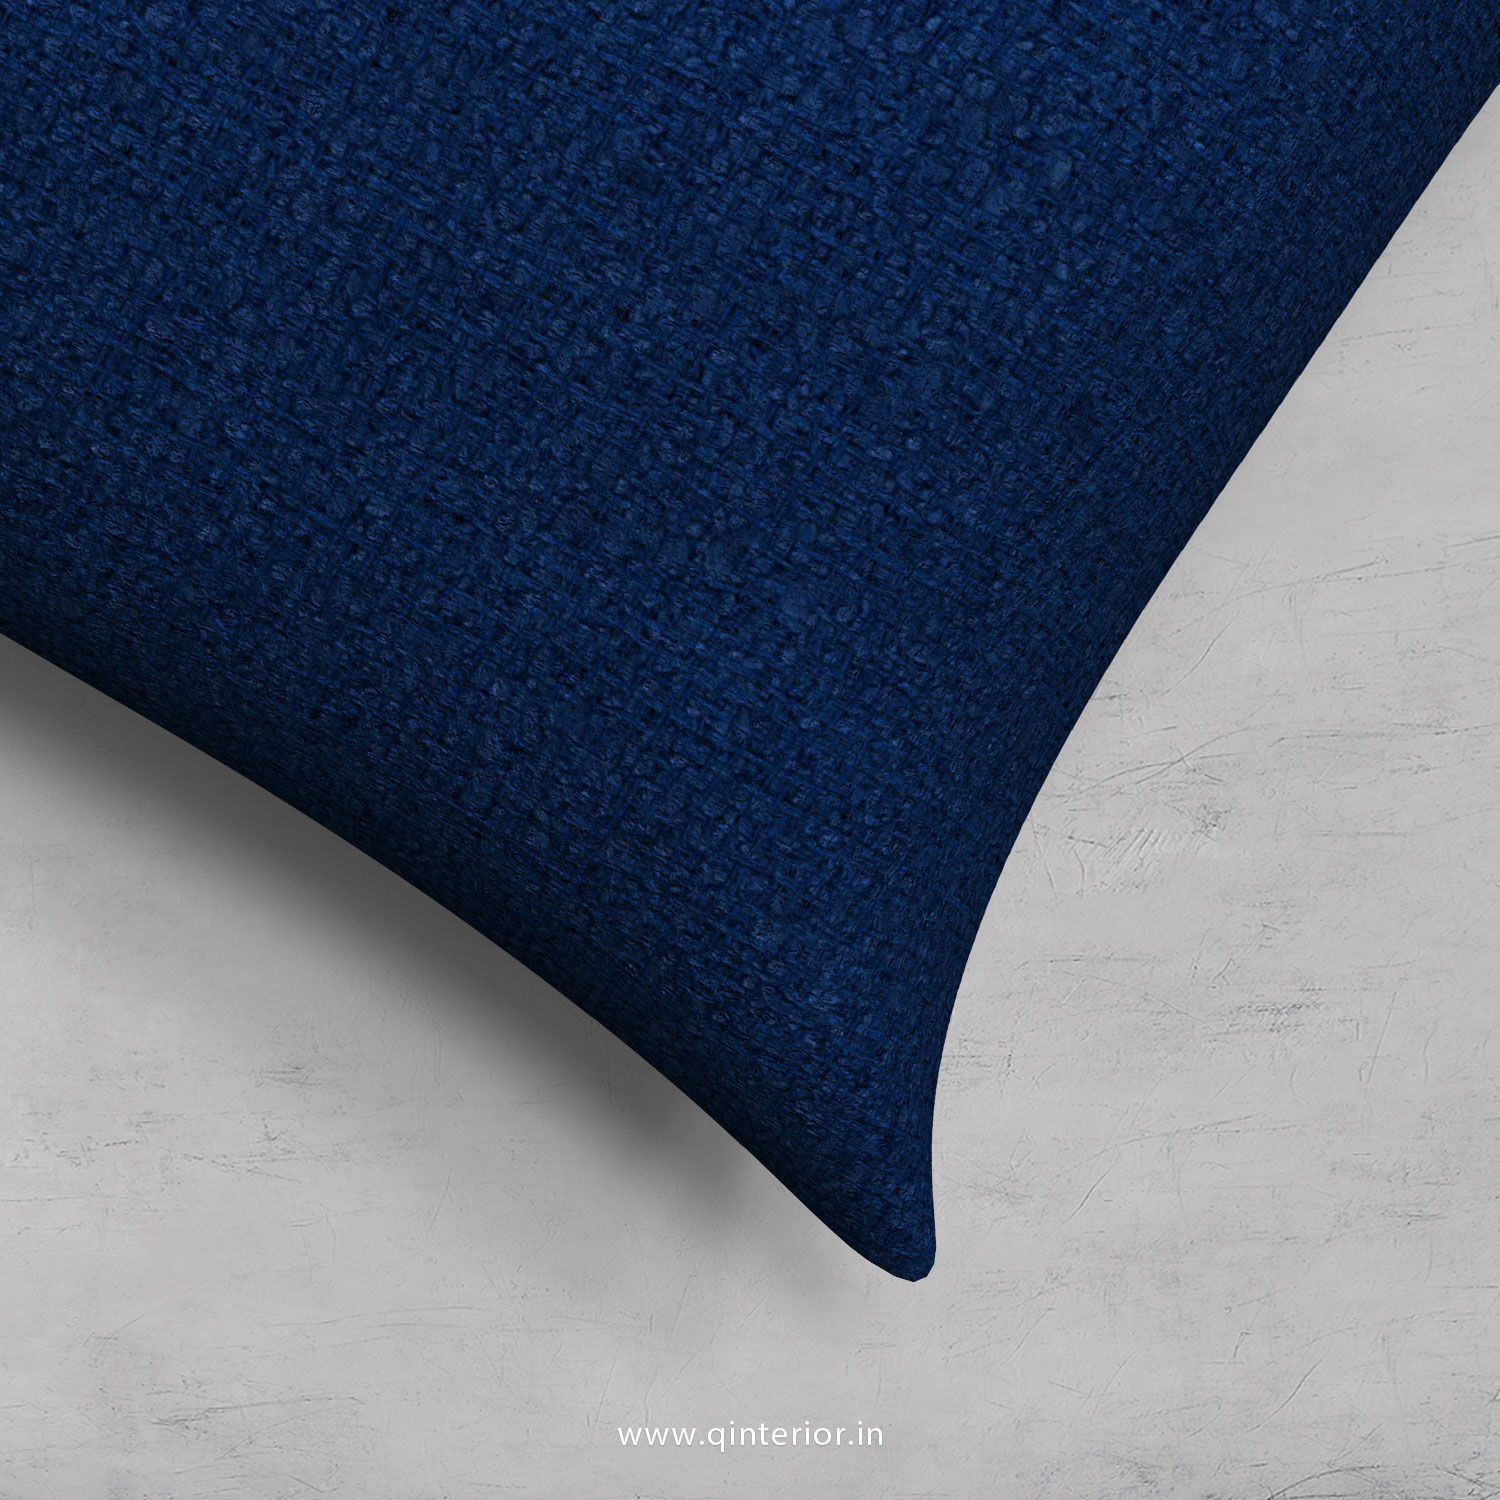 Cushion With Cushion Cover in Bargello- CUS002 BG07